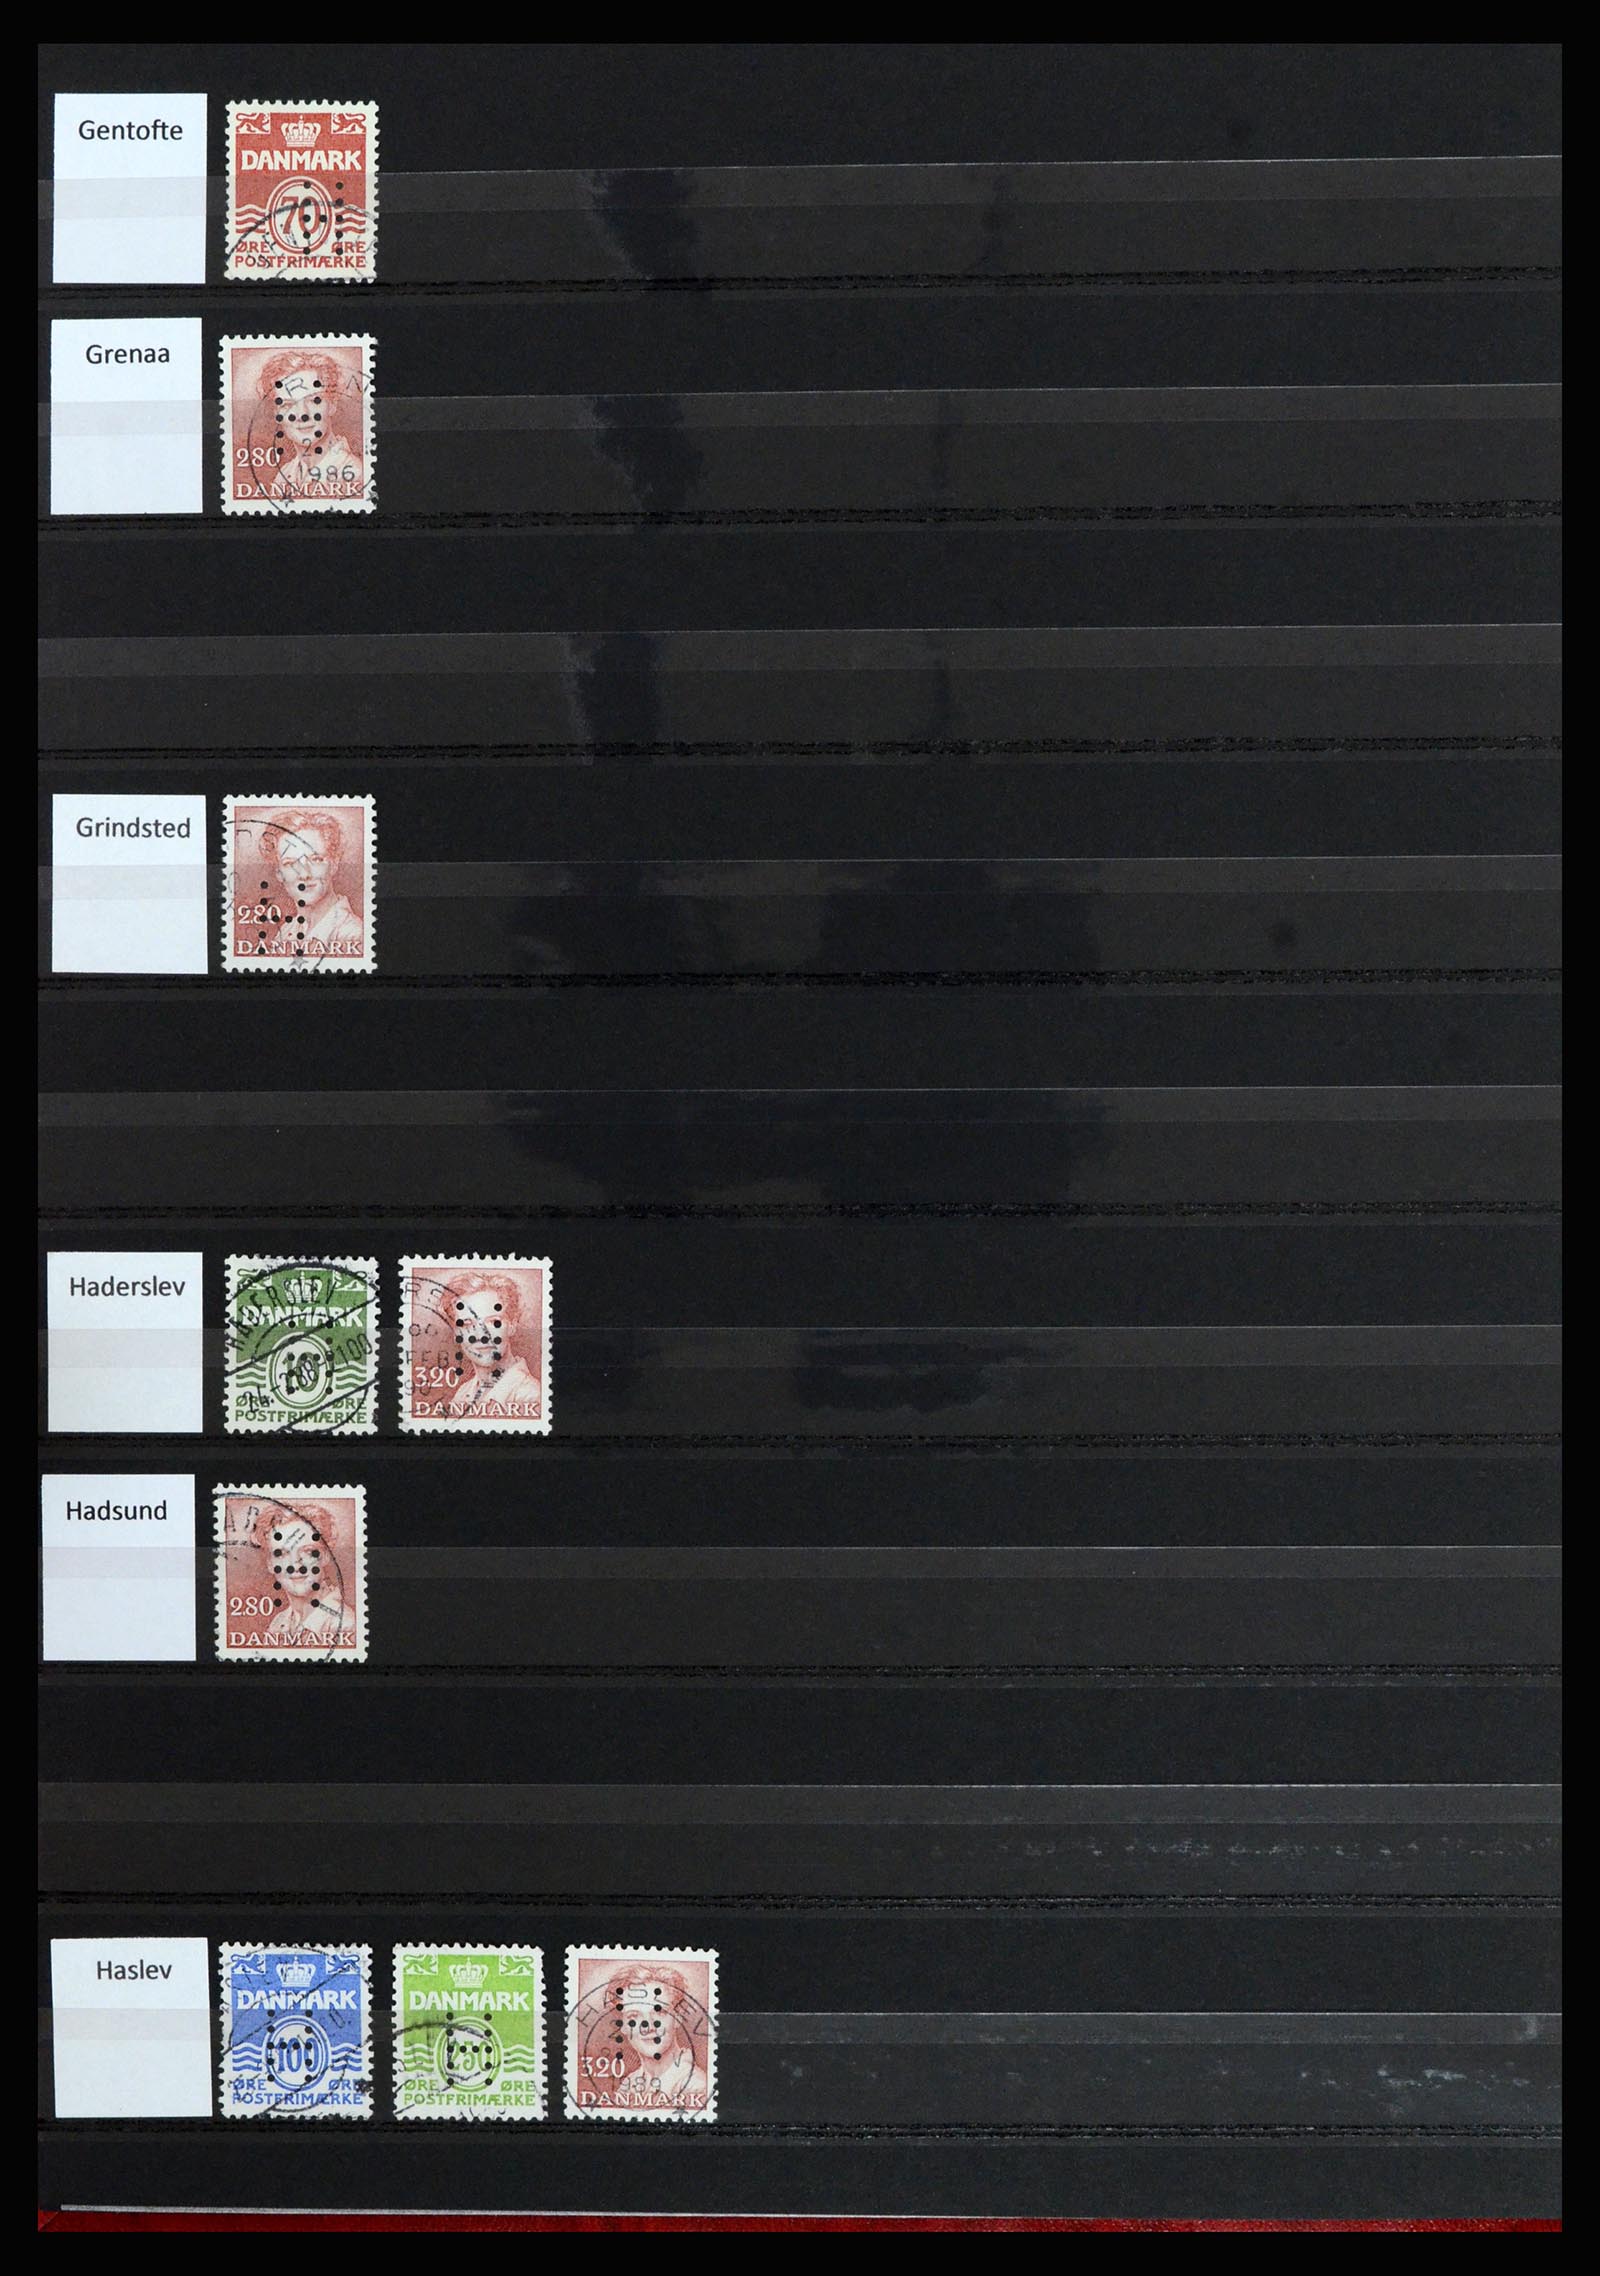 37056 020 - Postzegelverzameling 37056 Denemarken perfins.